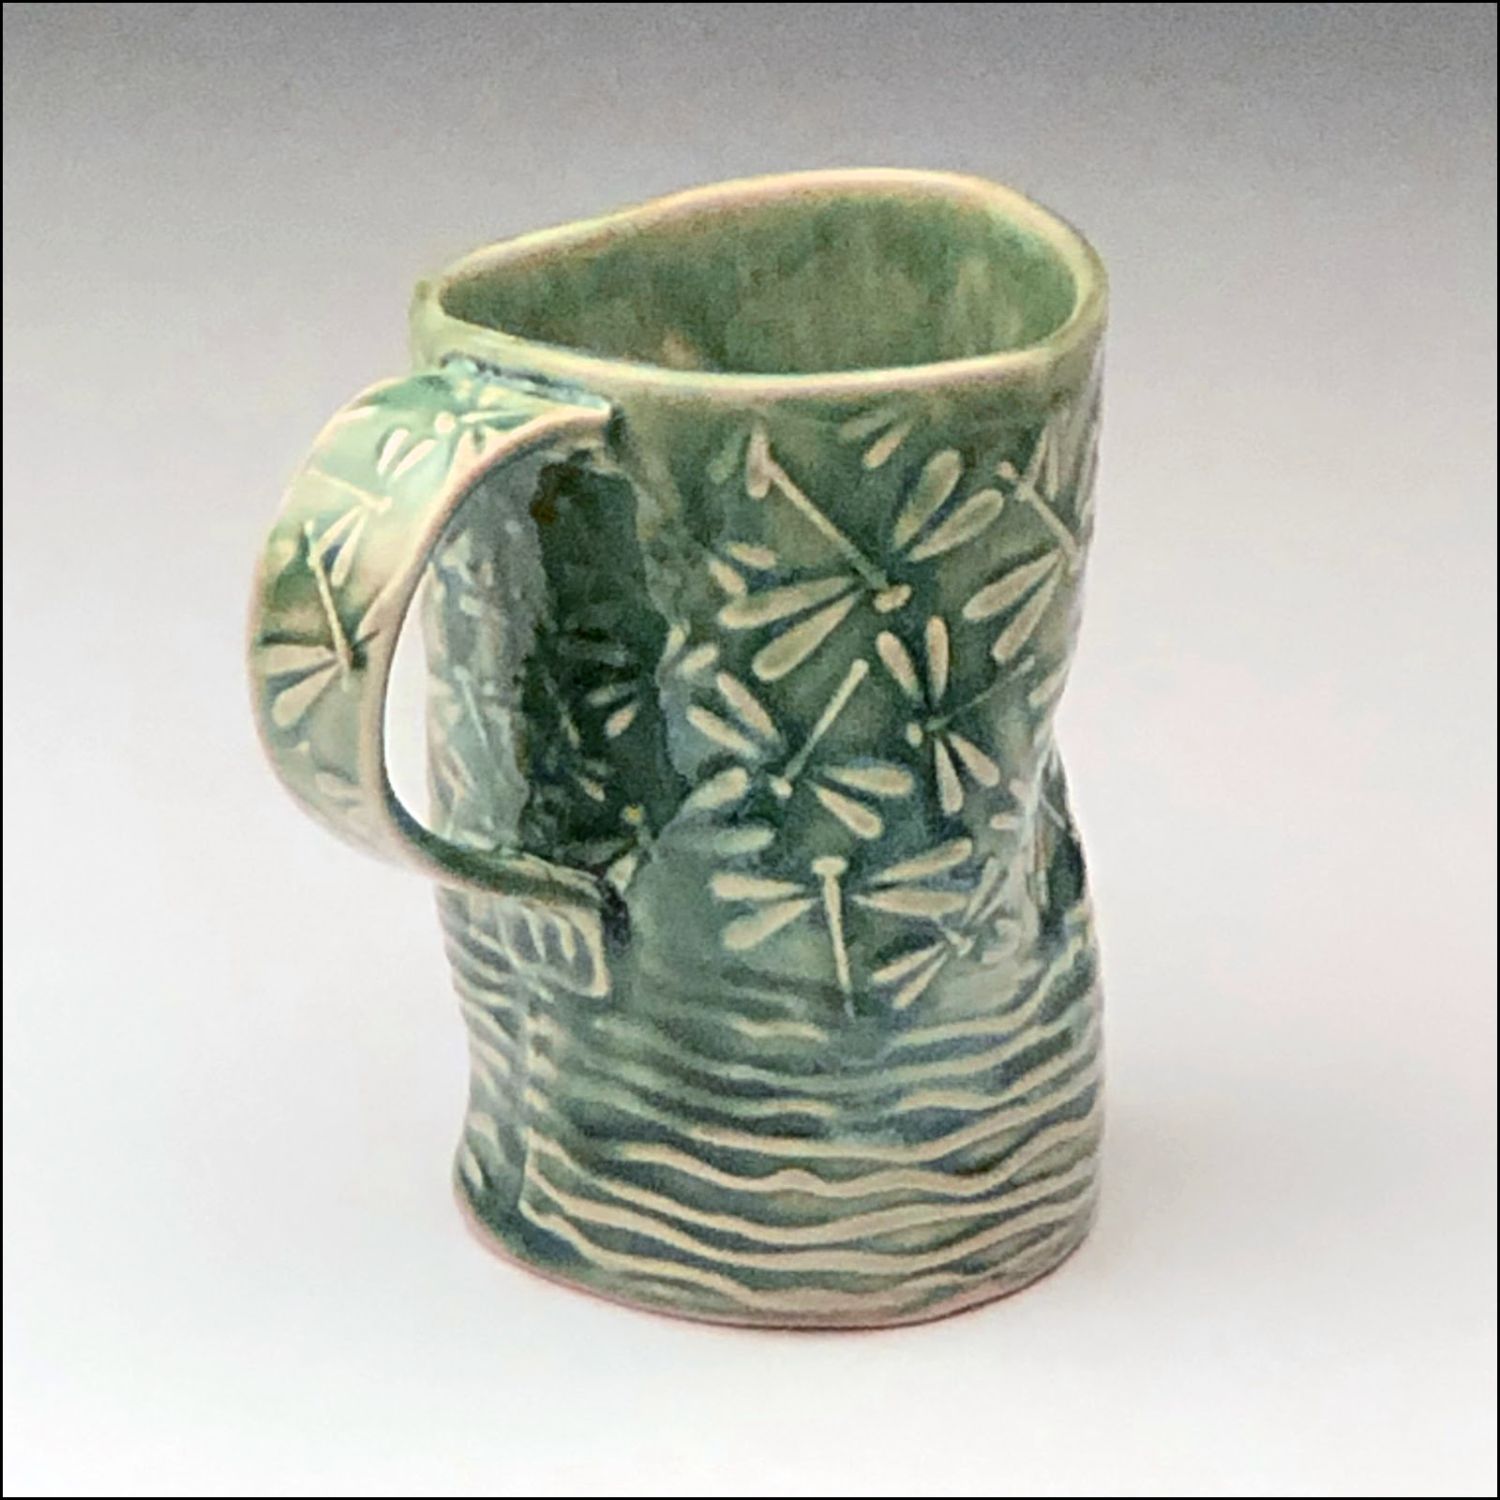 Audrey Mah: Green Dragonfly Mug Product Image 3 of 3